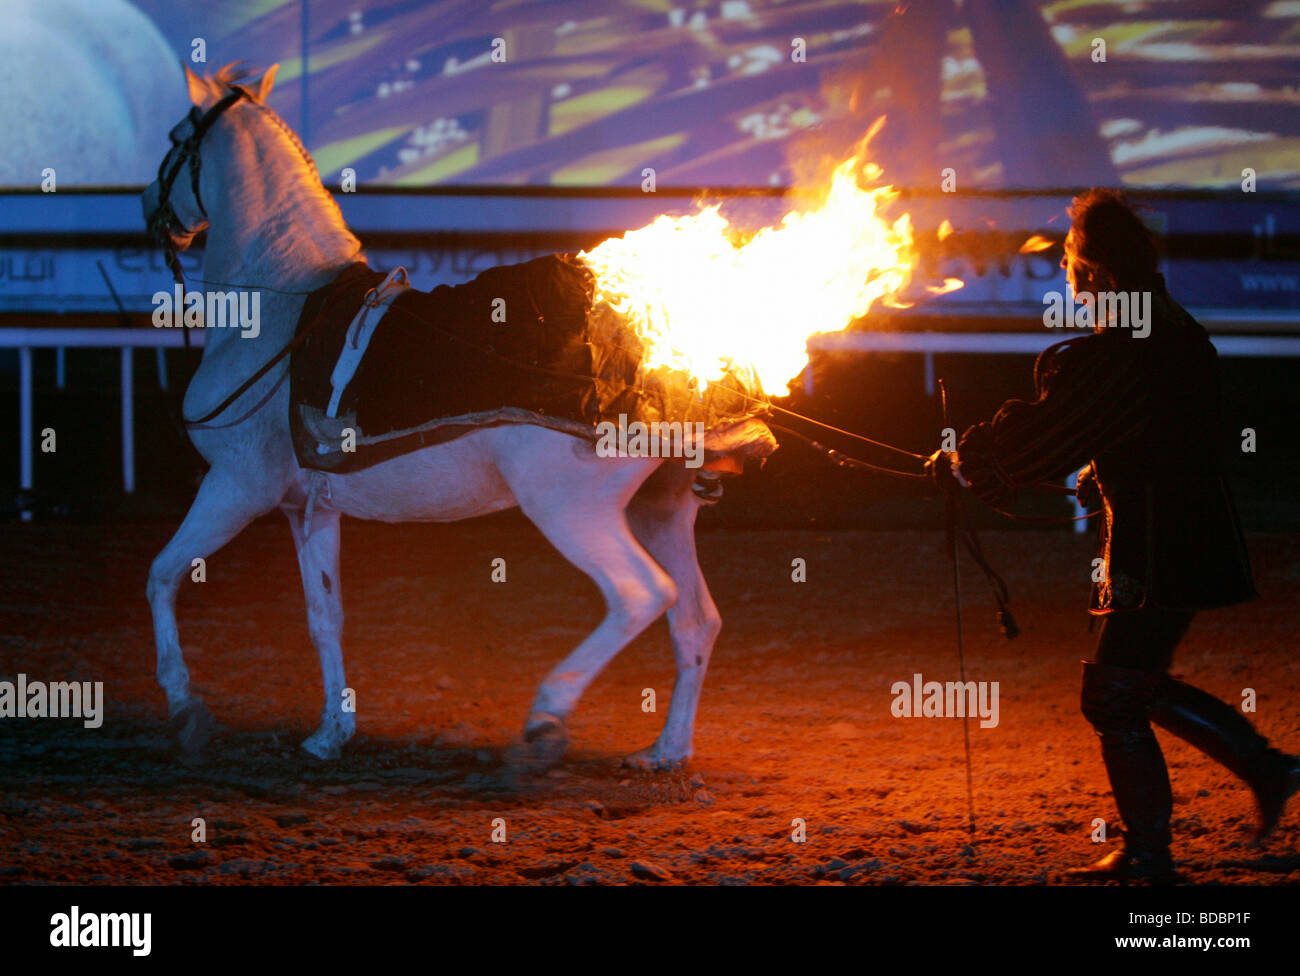 Horse with burning blanket, Dubai, United Arab Emirates Stock Photo